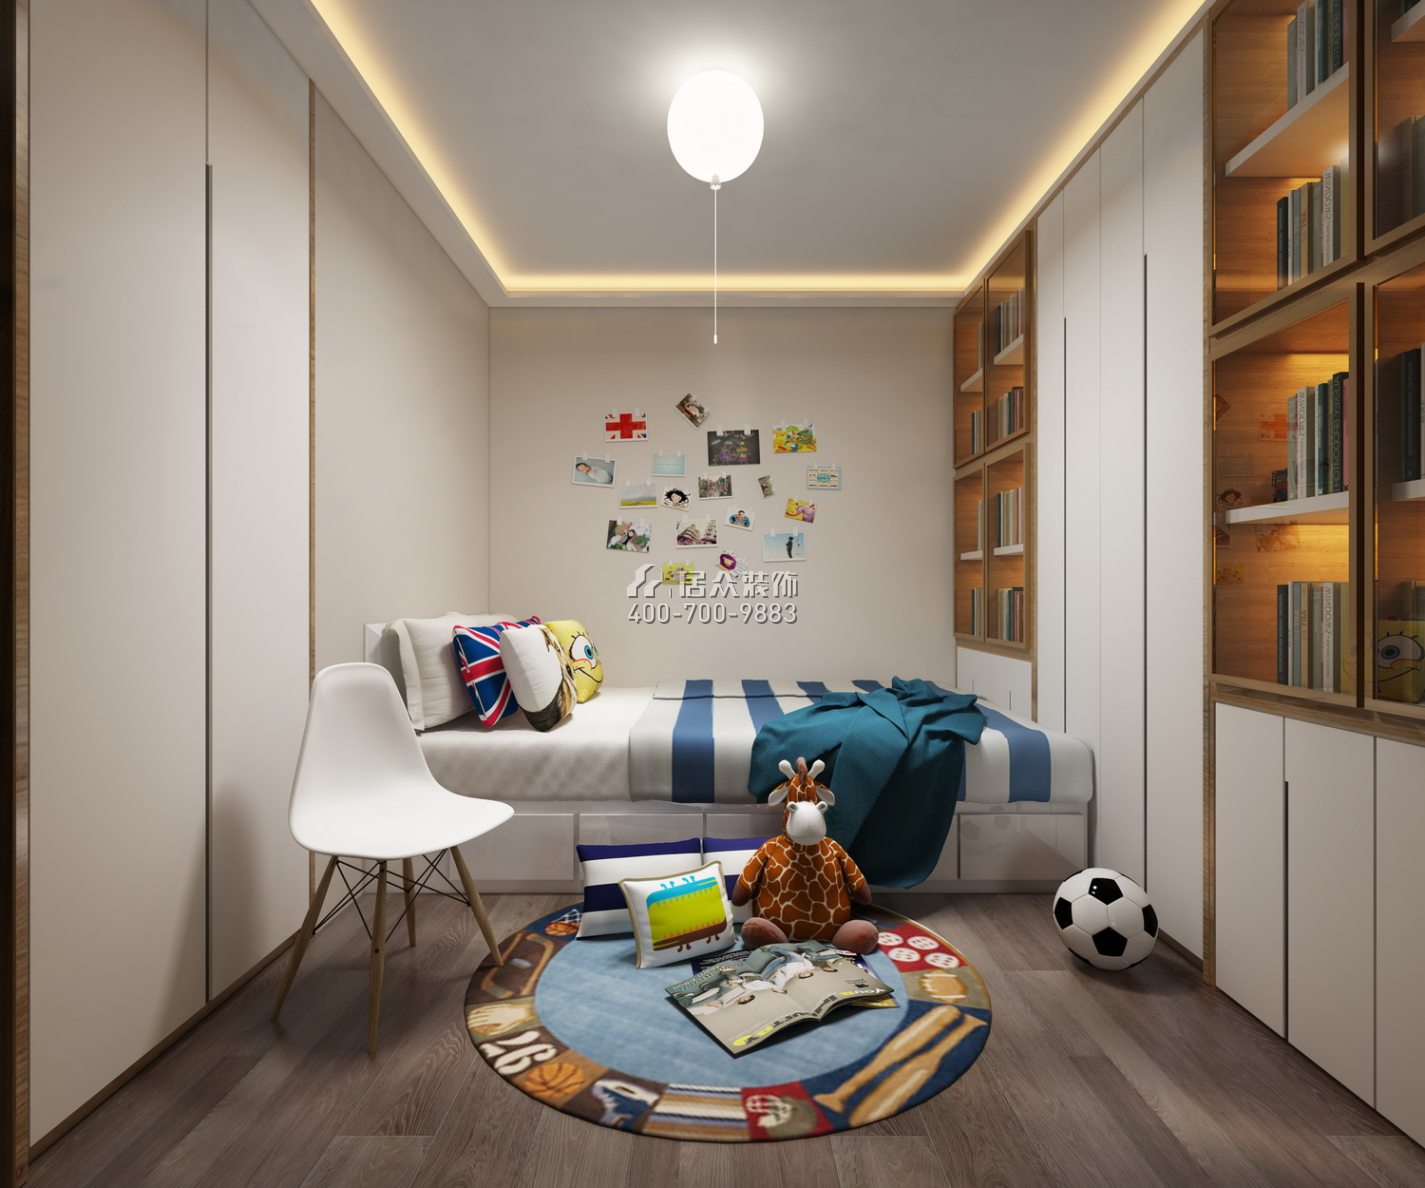 擎天華庭126平方米中式風格平層戶型兒童房裝修效果圖